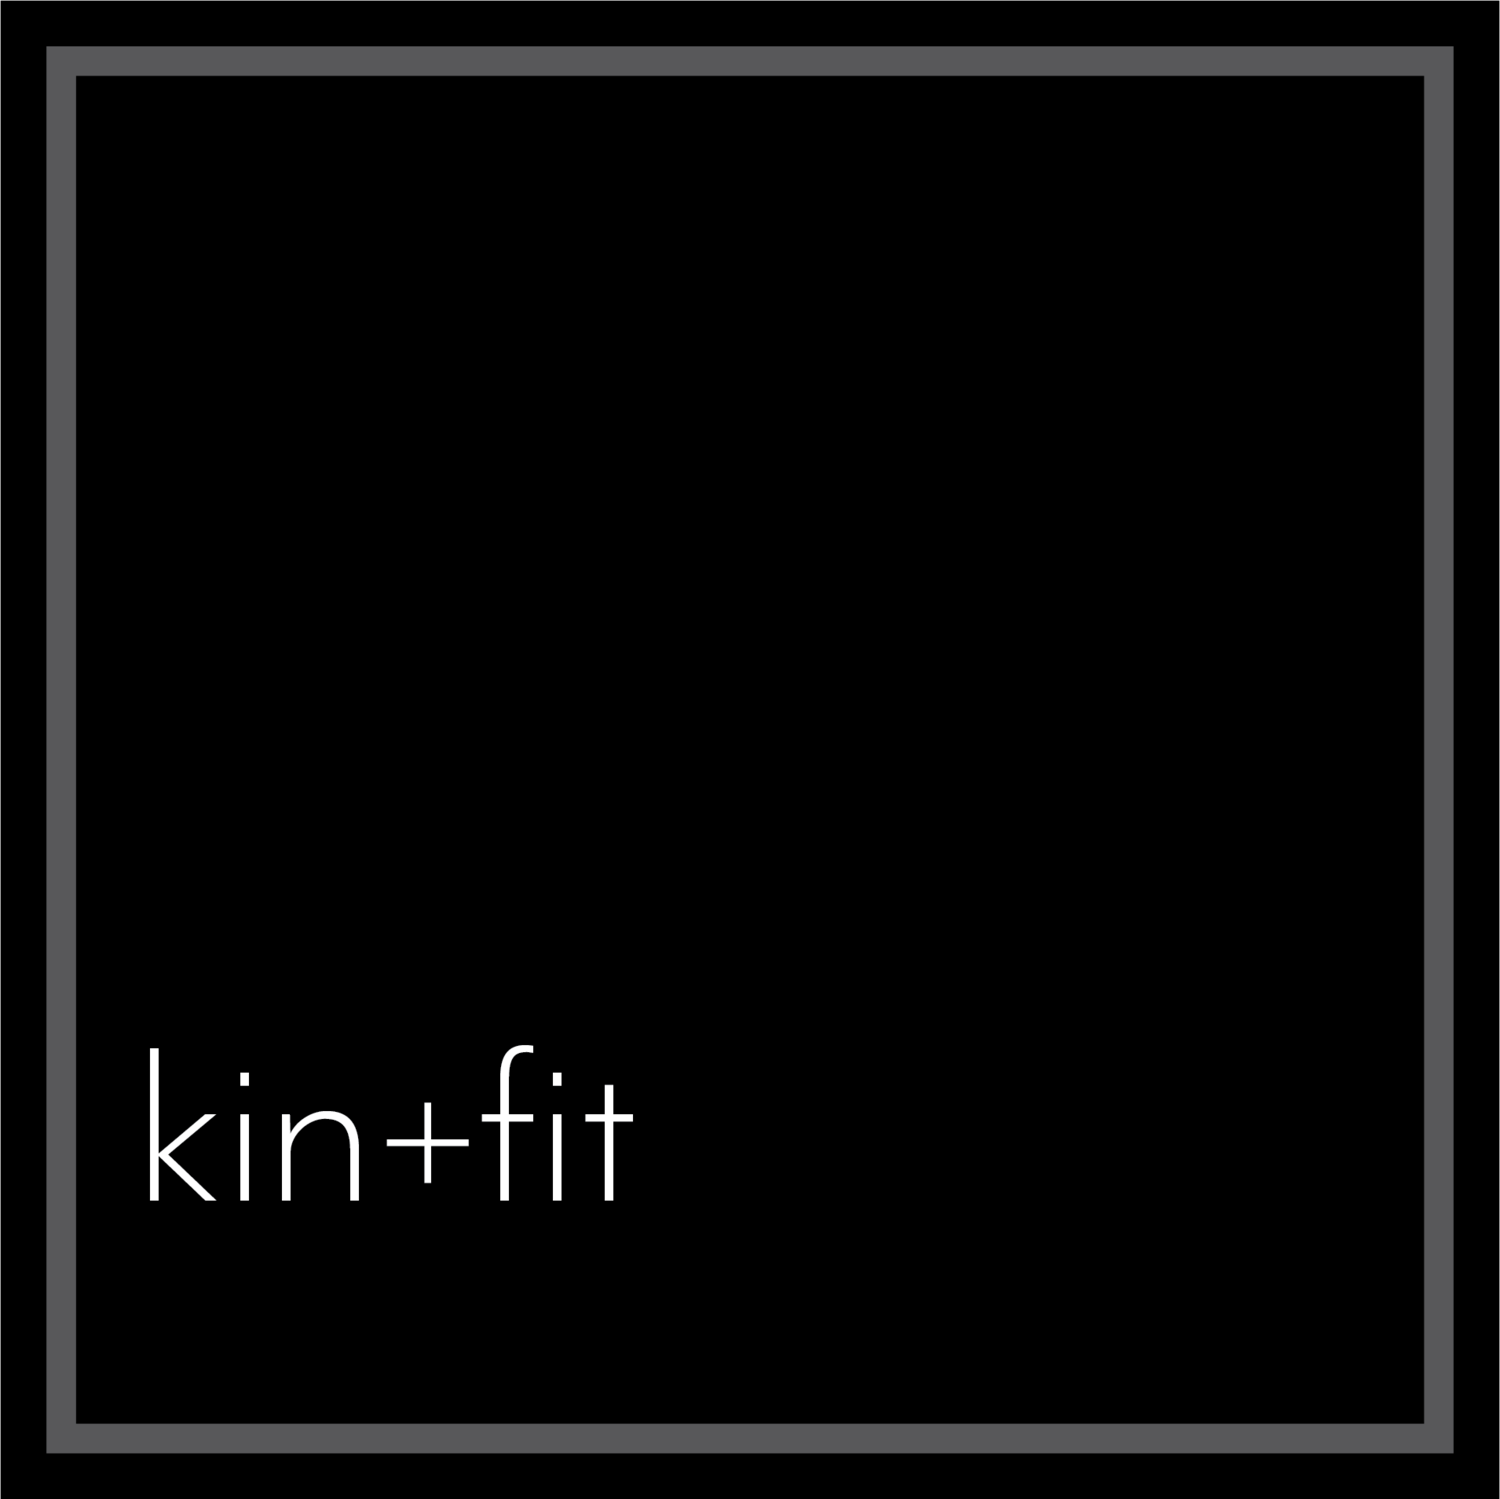 kin+fit